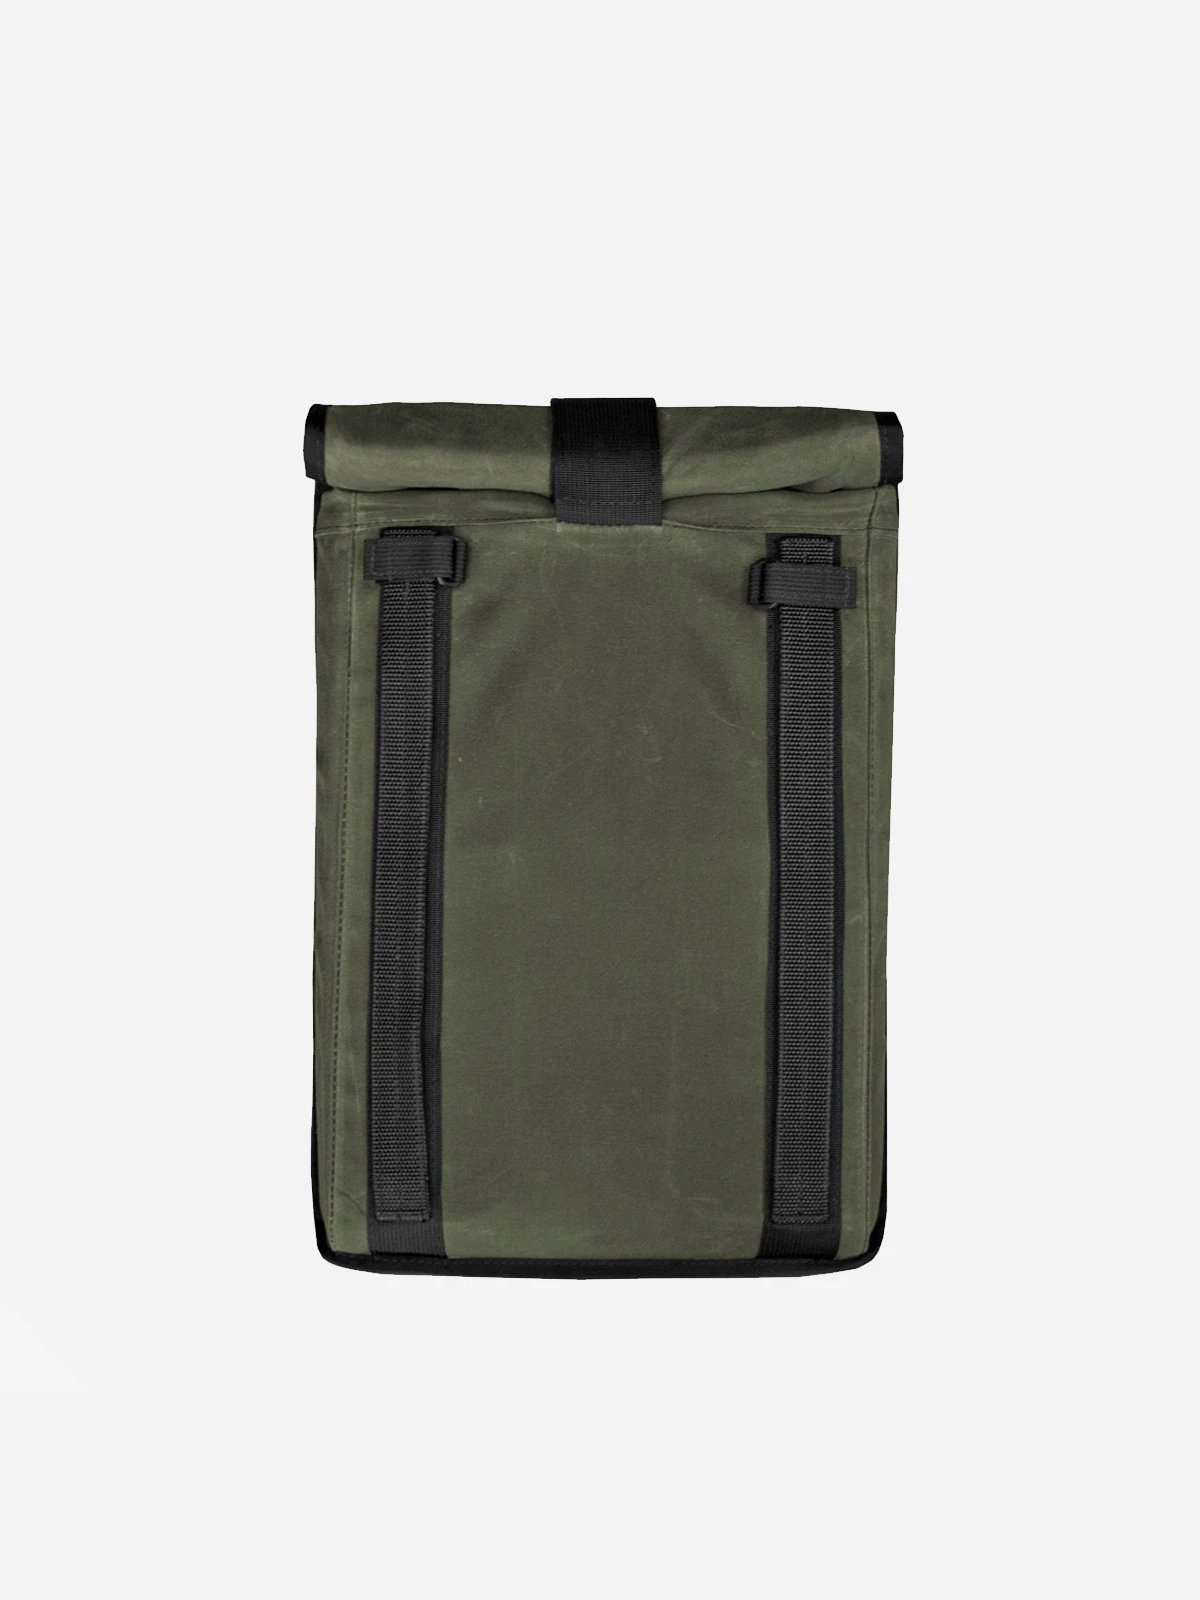 Arkiv Laptop-Tasche von Mission Workshop - Wetterfeste Taschen & Technische Bekleidung - San Francisco & Los Angeles - Für die Ewigkeit gebaut - Garantiert